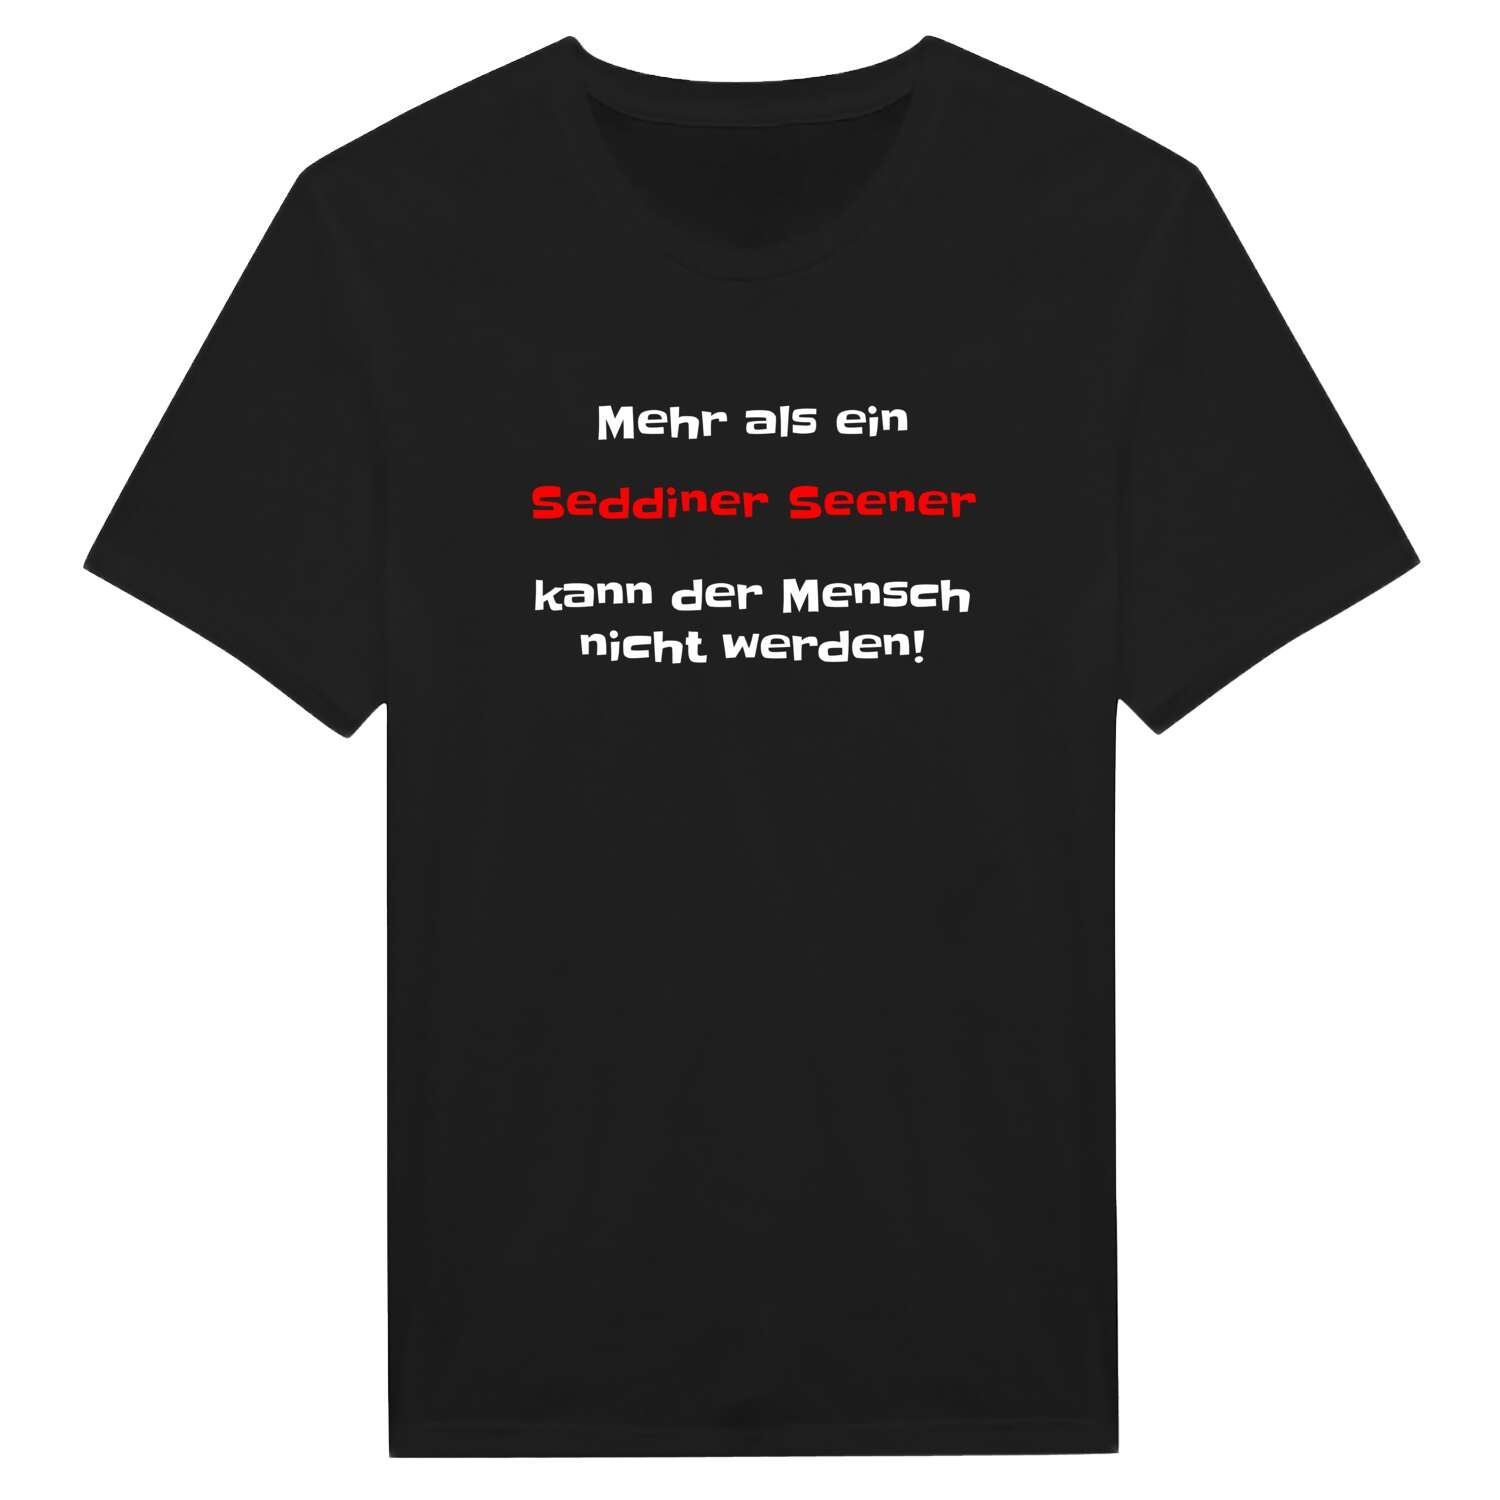 Seddiner See T-Shirt »Mehr als ein«